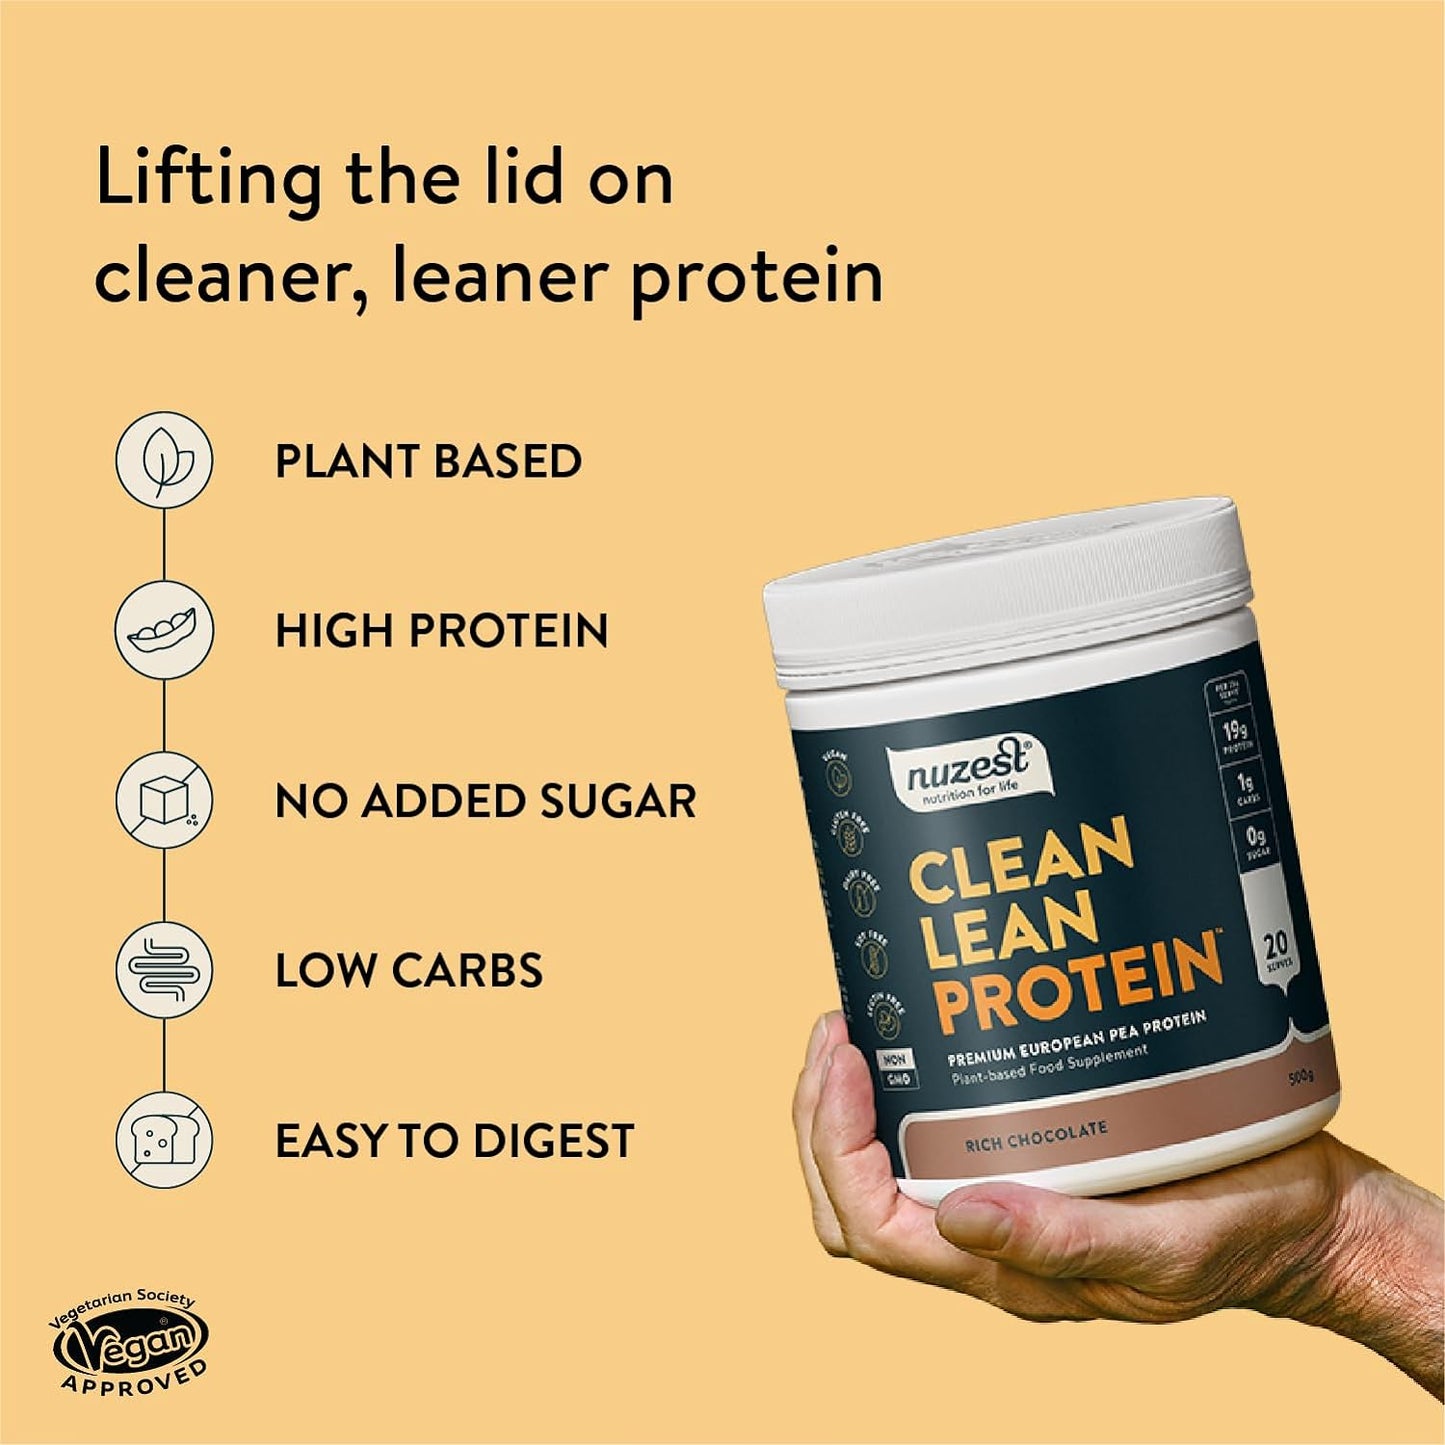 Clean Lean Protein - Rich Chocolate 500g